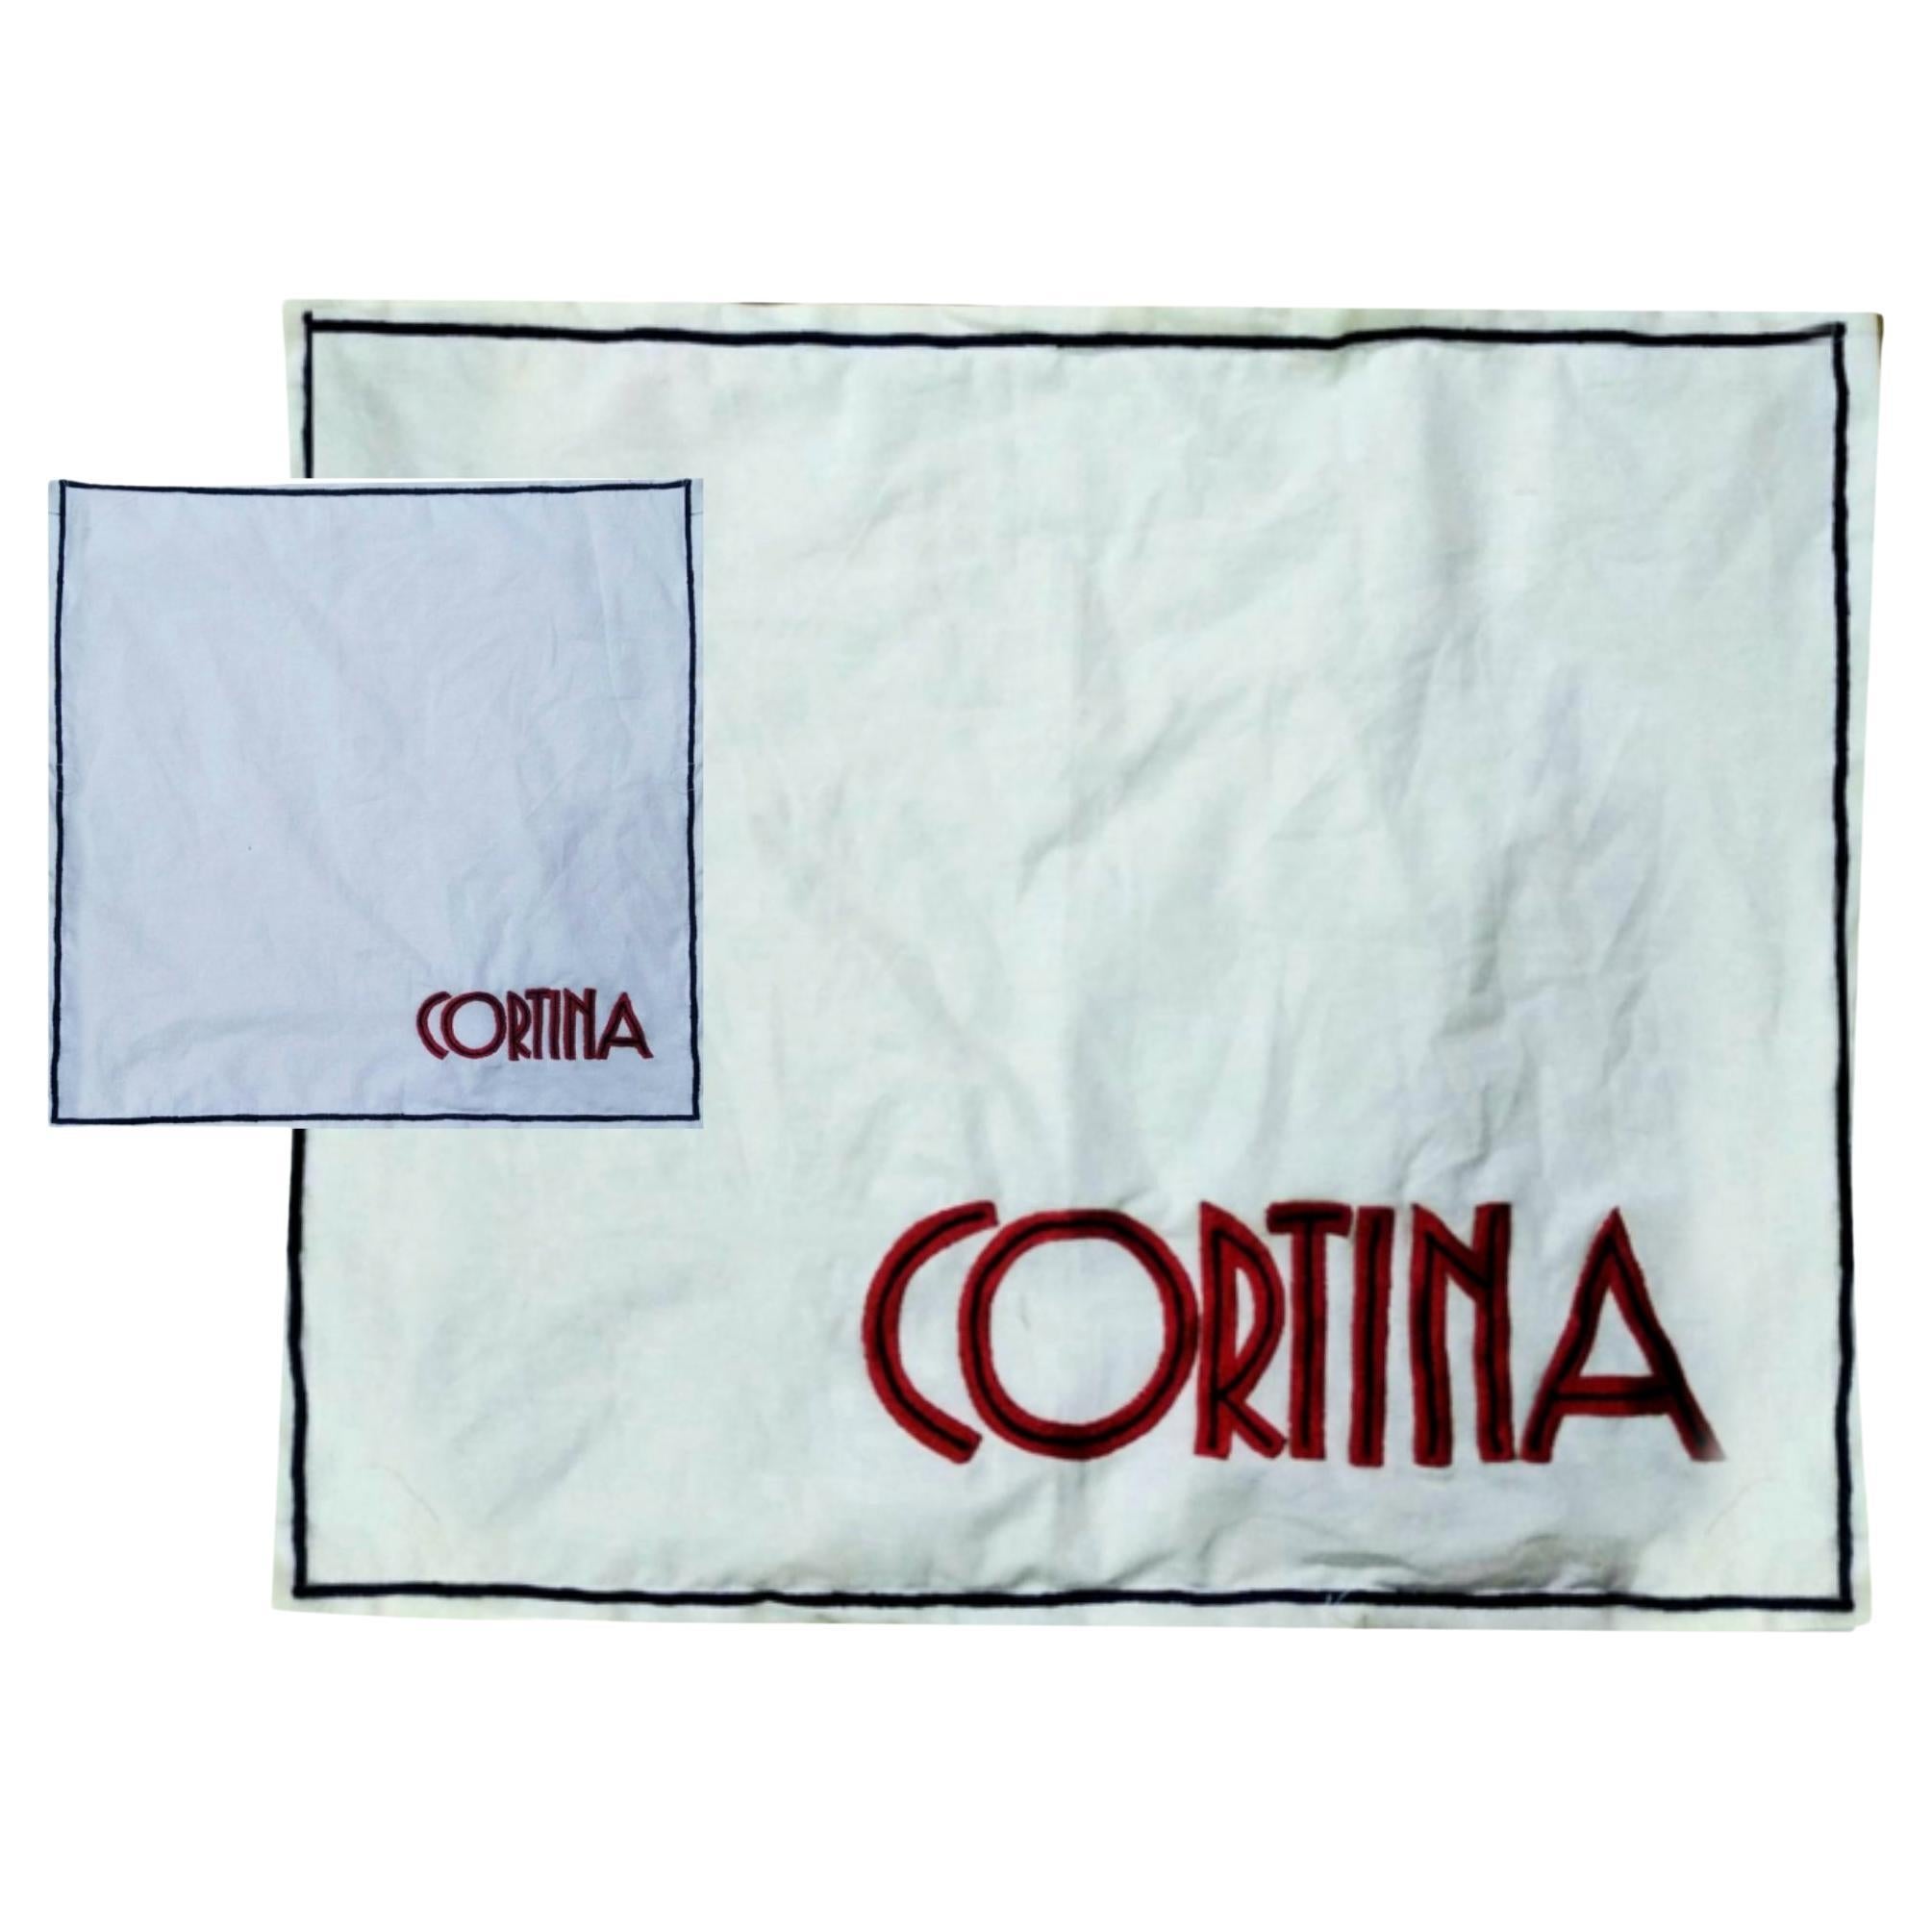 Handbestickter Kortina-Baumwoll-Tisch und Servietten im Angebot